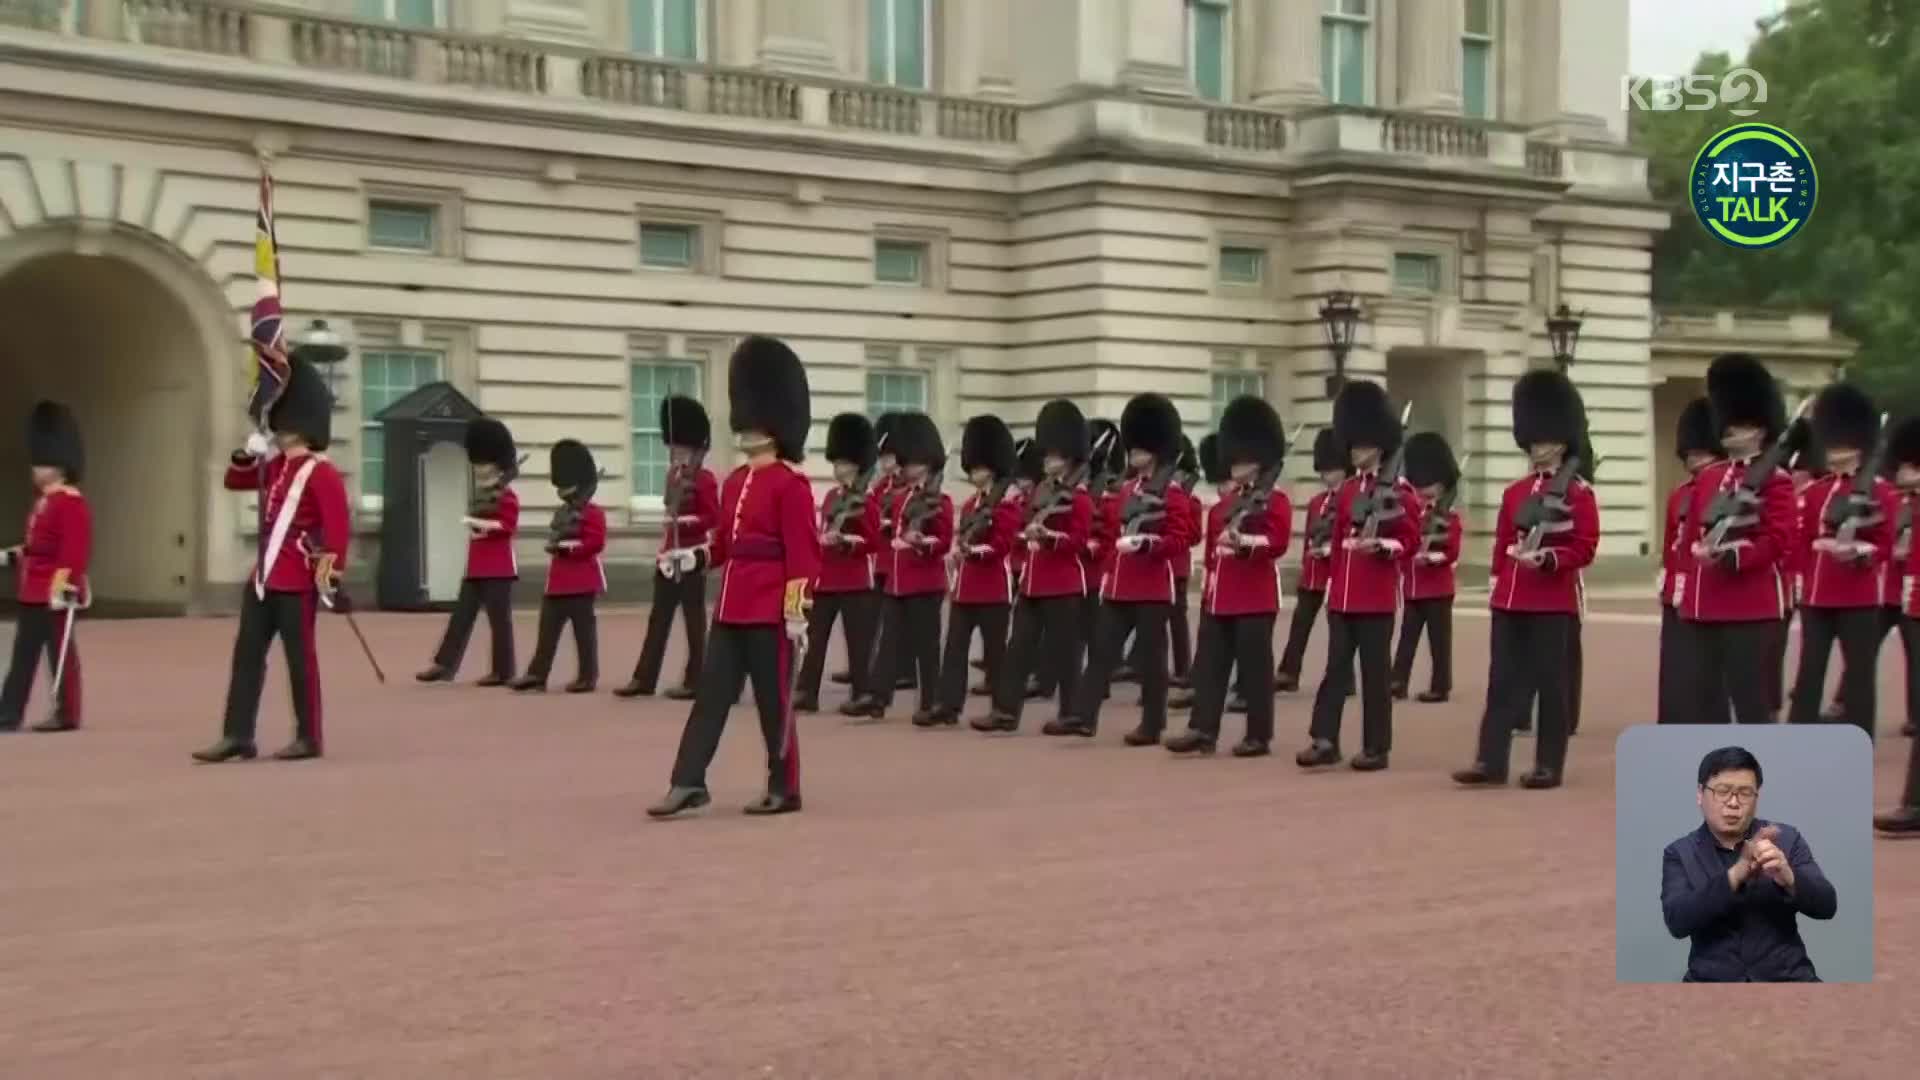 [지구촌 Talk] 英 런던 ‘명물’ 버킹엄궁 근위병 교대식 재개